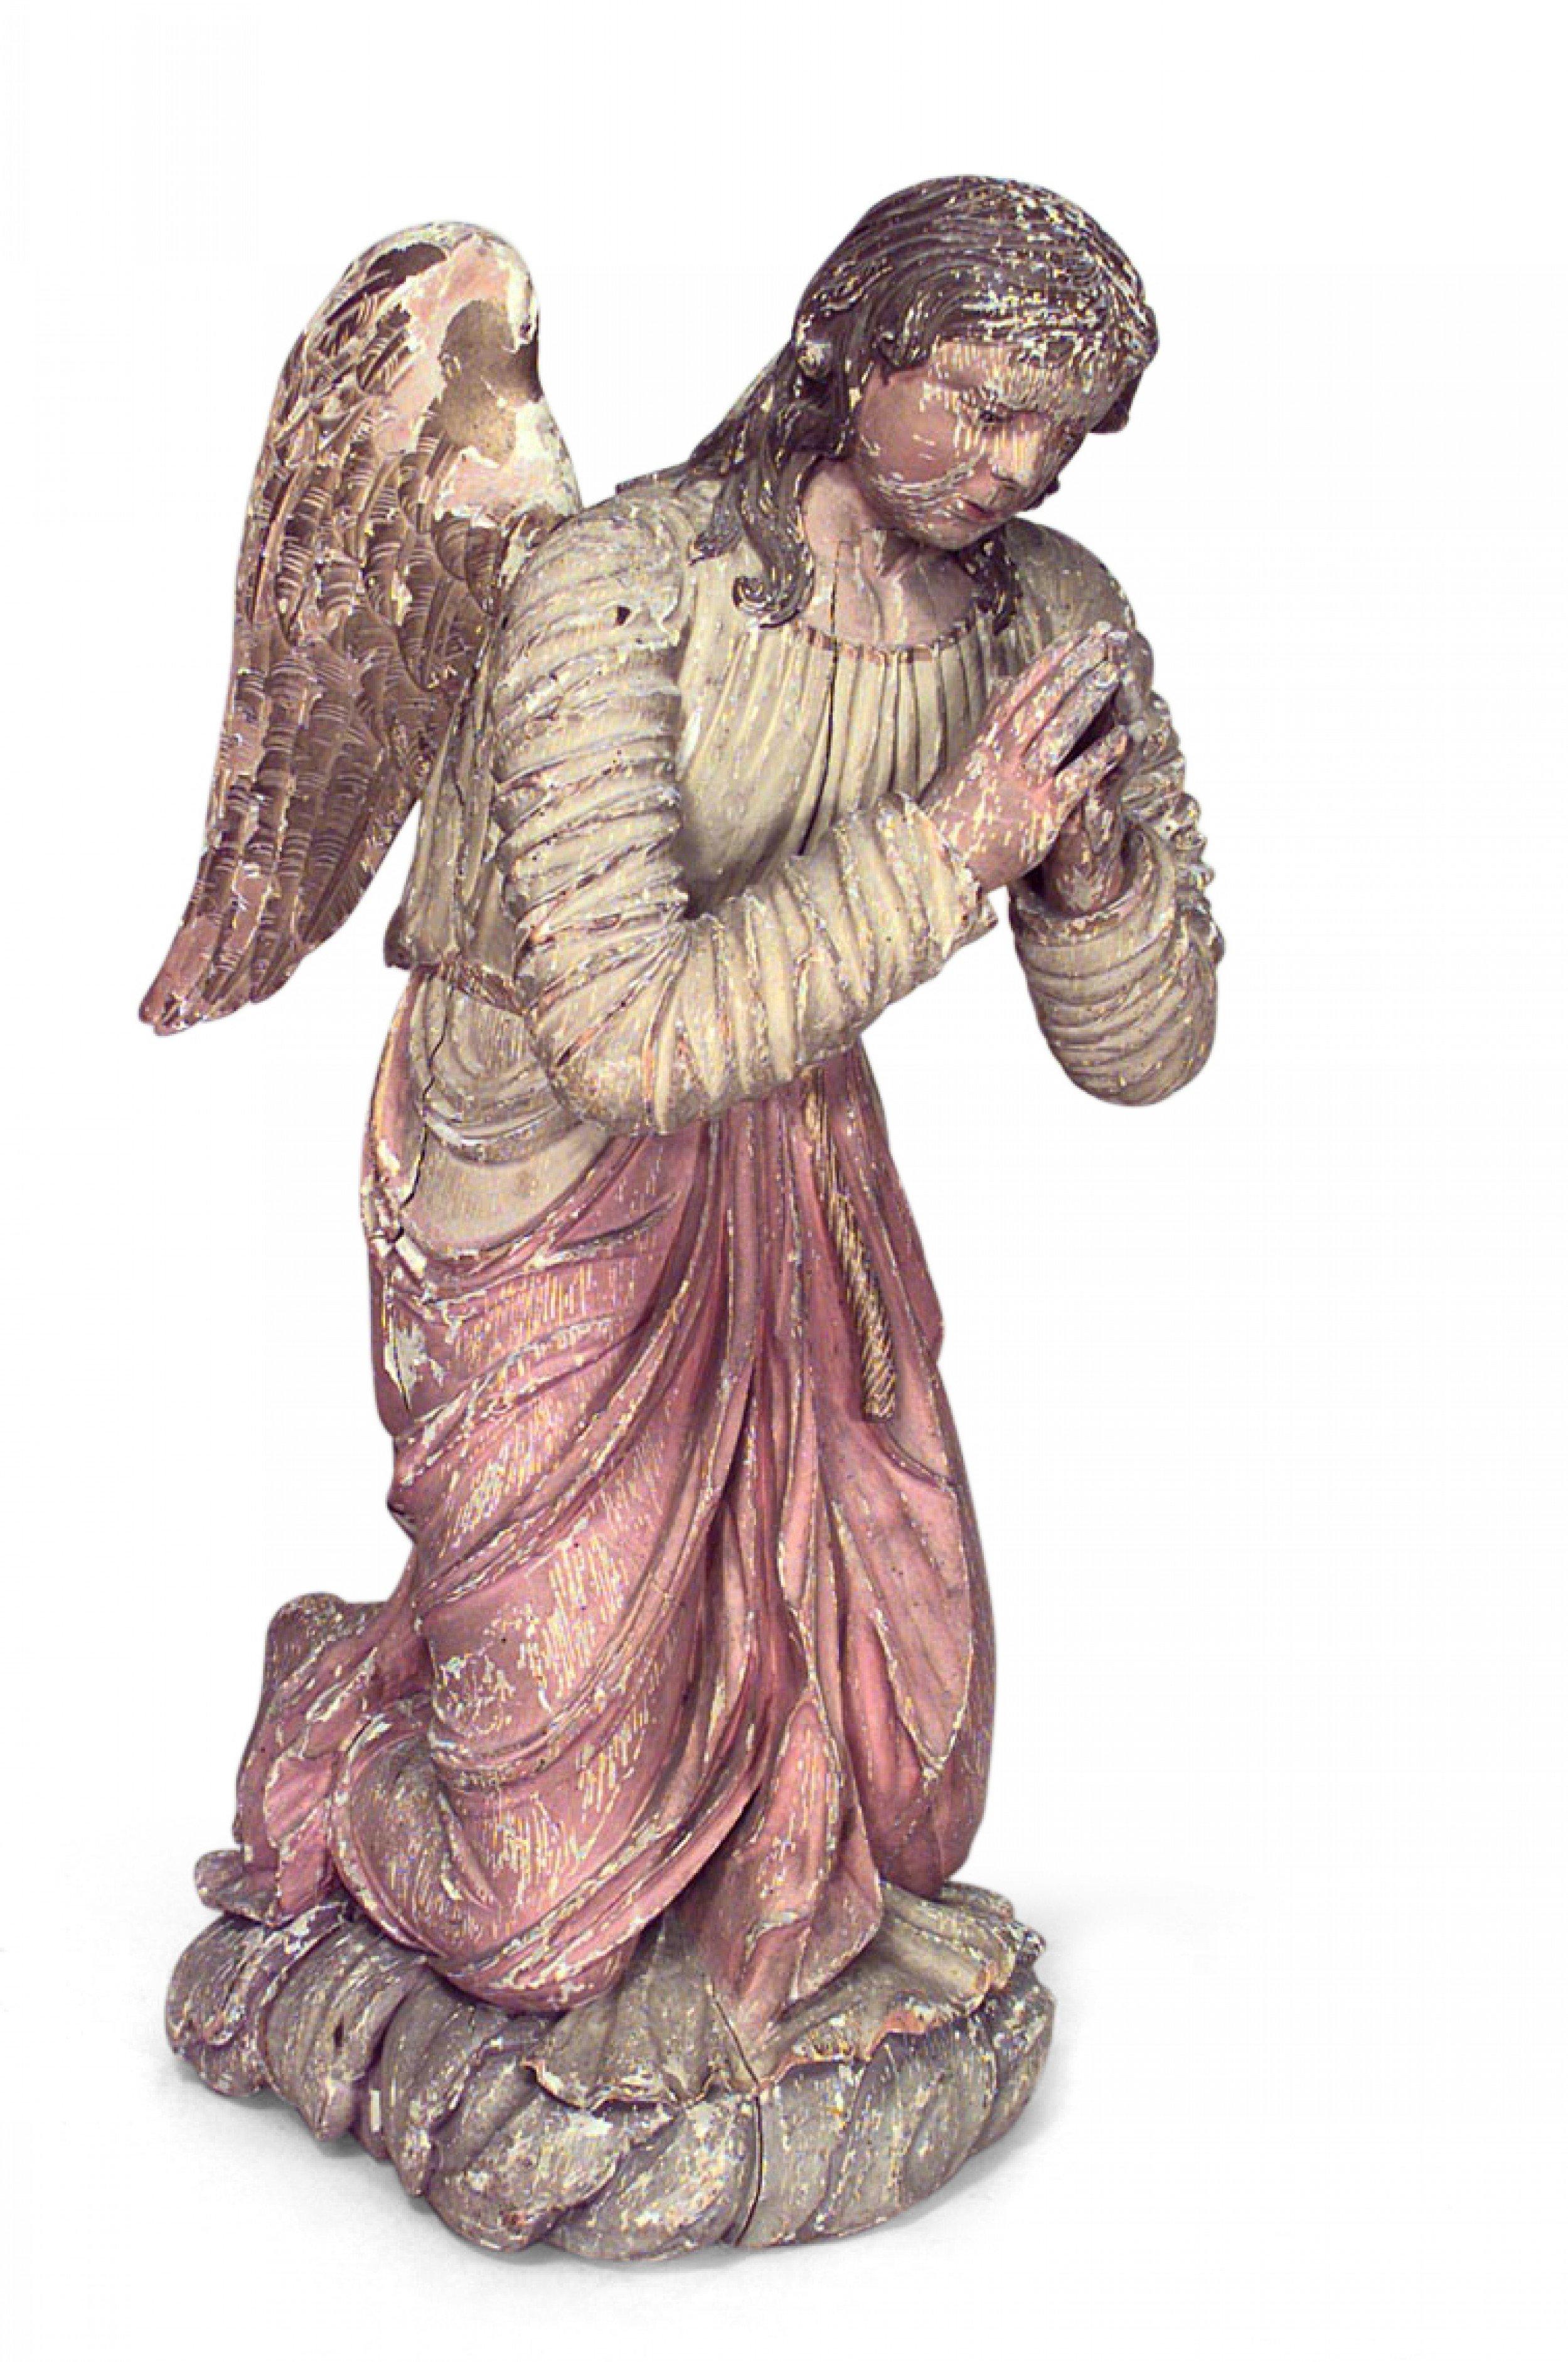 Paire d'anges agenouillés polychromes de style Renaissance italienne (19e siècle) avec ailes dorées.
          